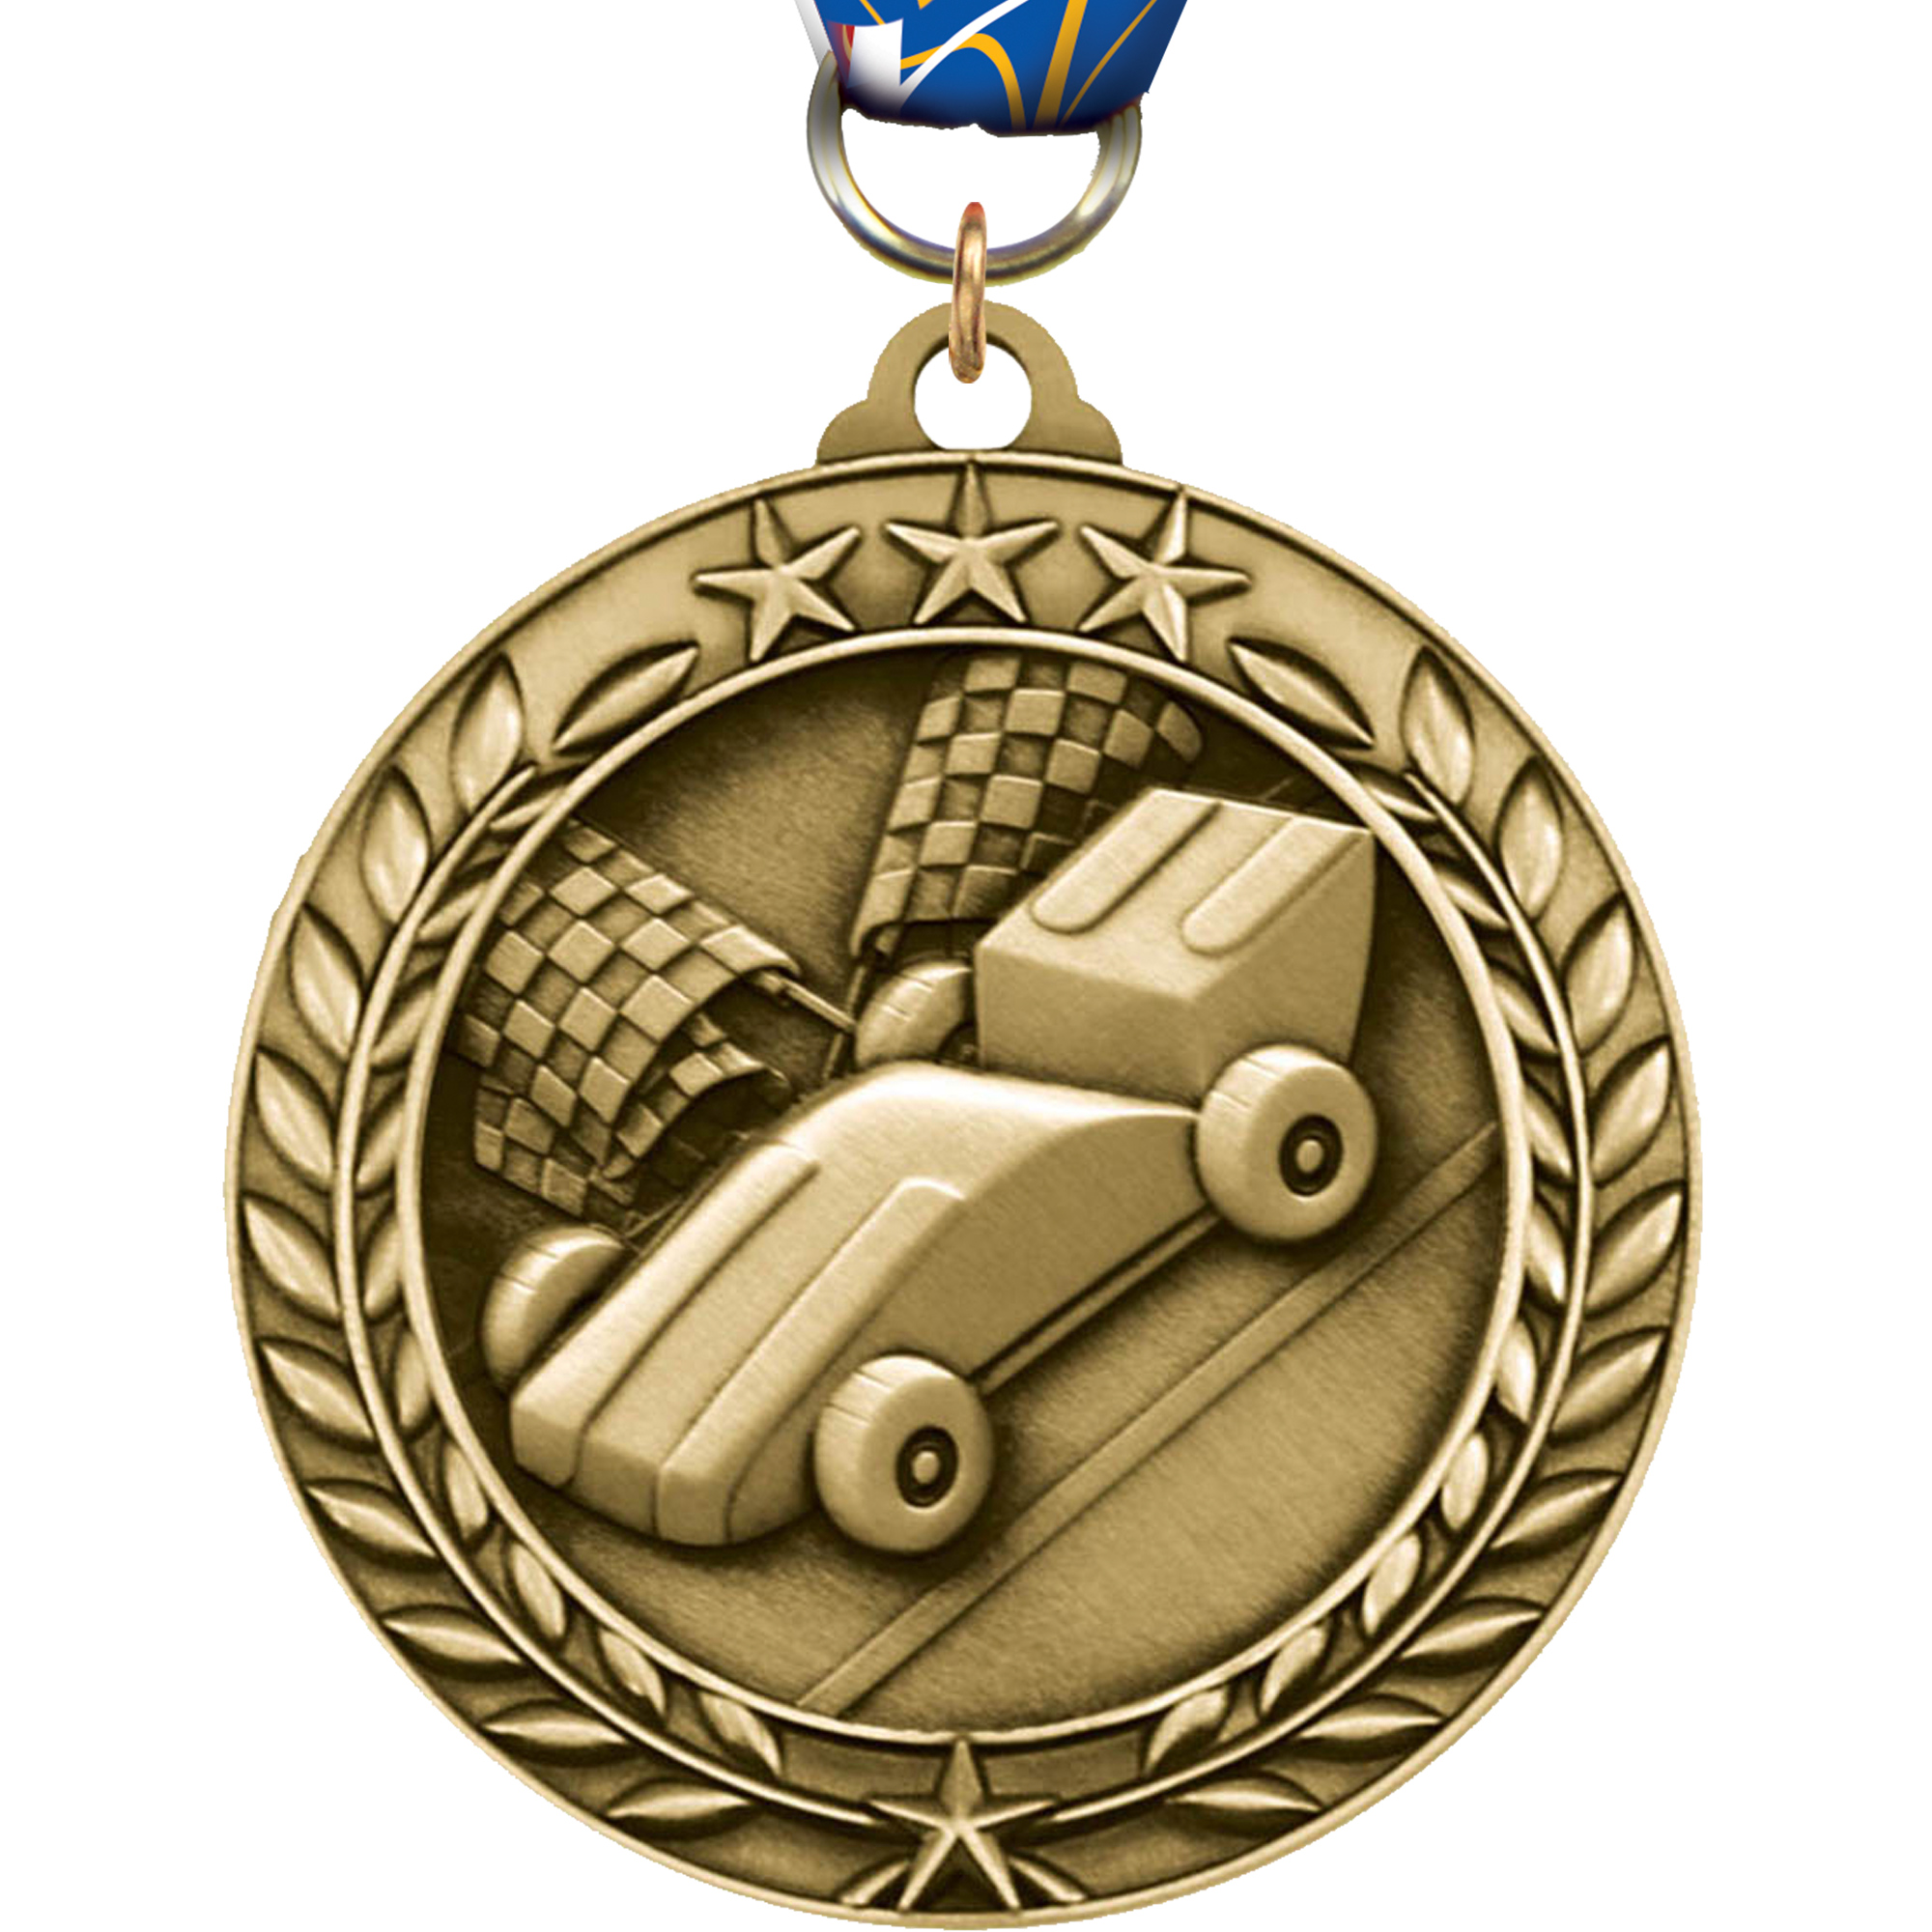 Derby 1.75 inch Dimensional Medal